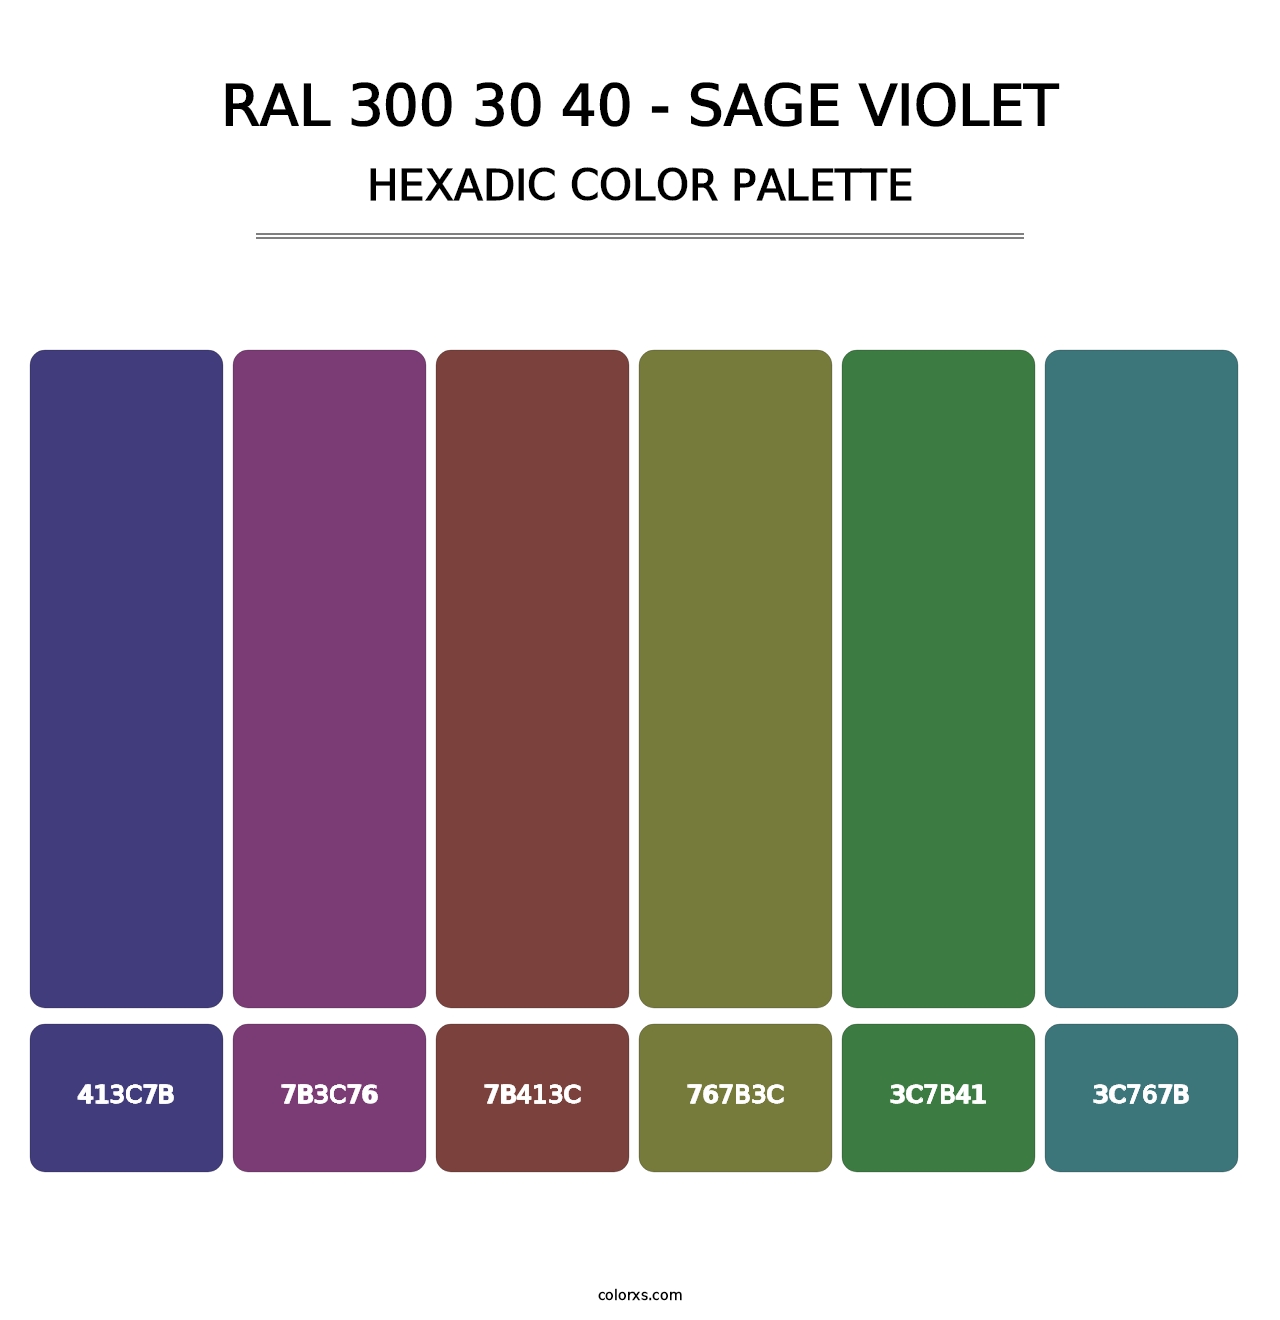 RAL 300 30 40 - Sage Violet - Hexadic Color Palette